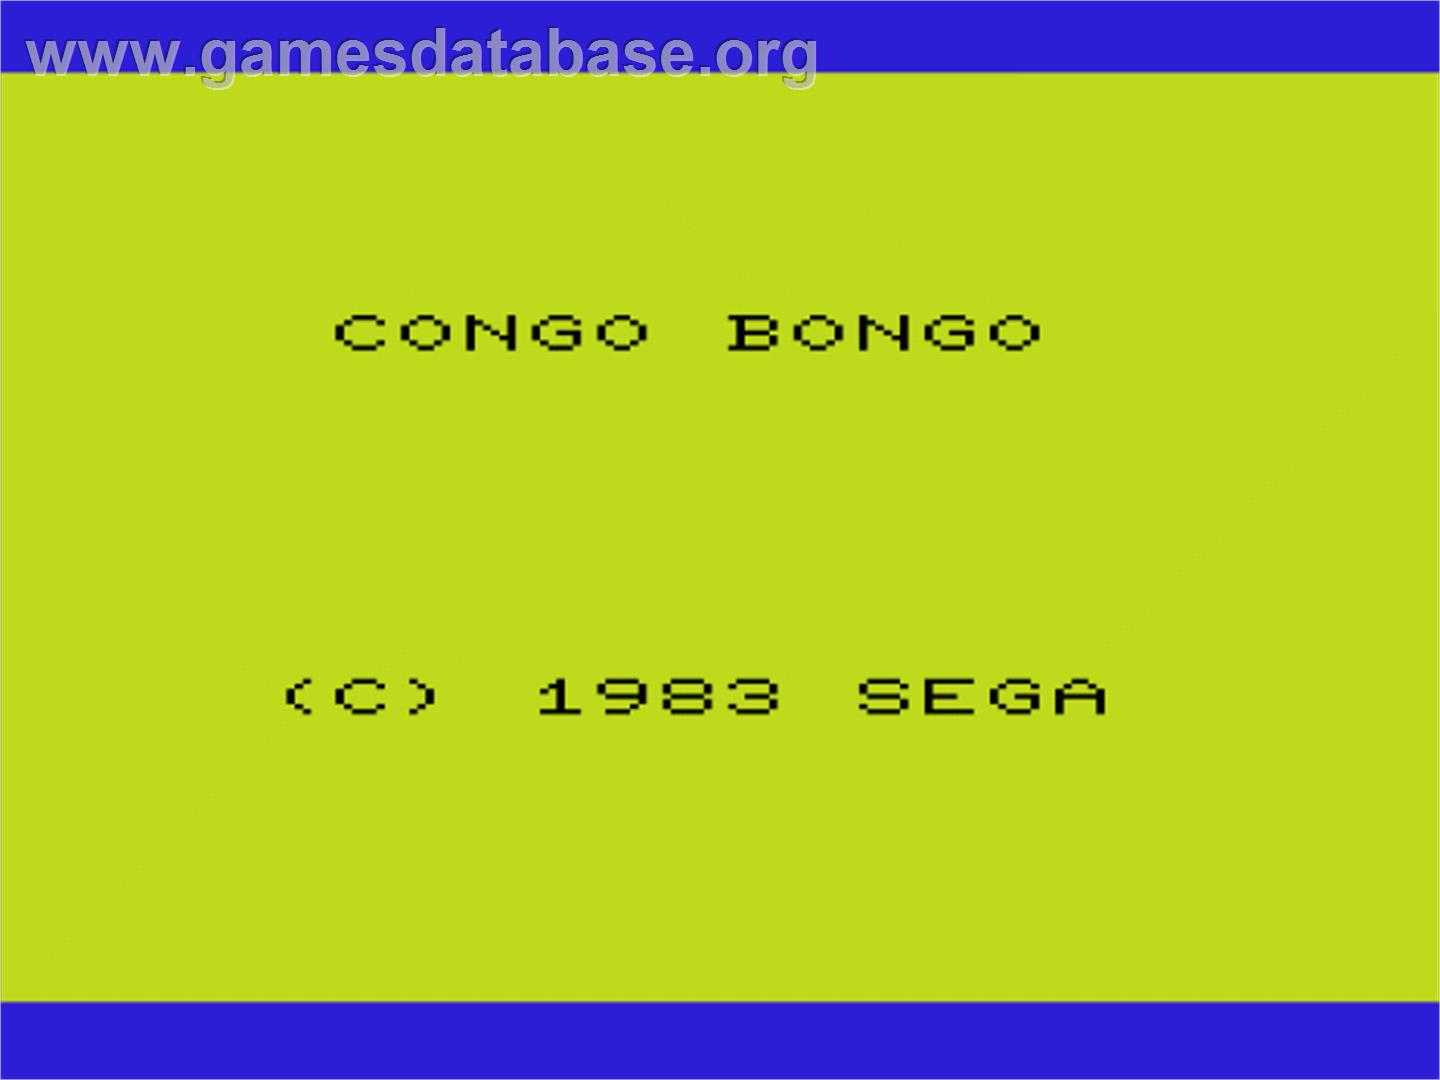 Congo Bongo - Commodore VIC-20 - Artwork - Title Screen